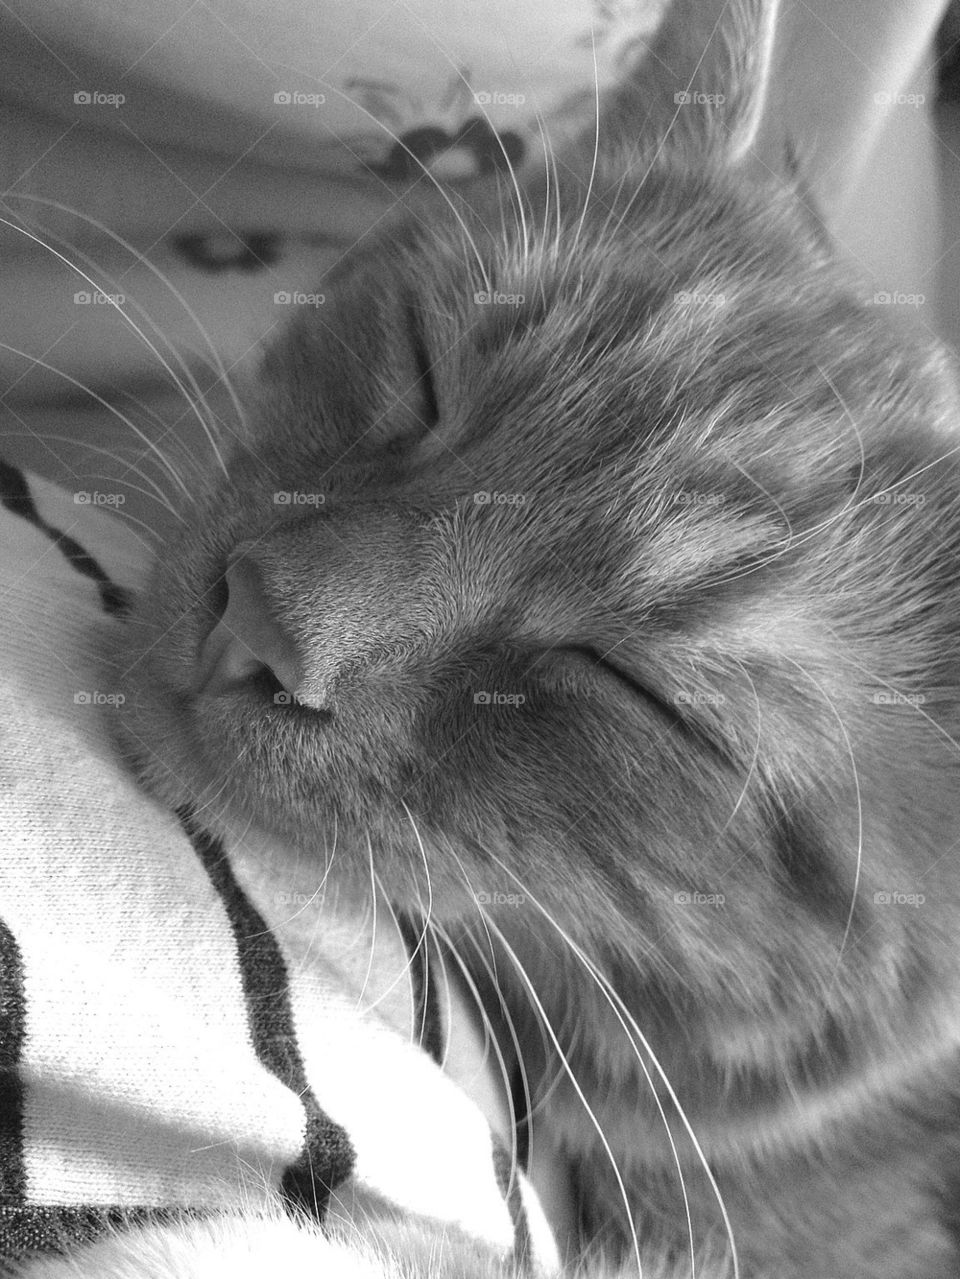 Beautiful kitten in blissful sleep on his human mum.